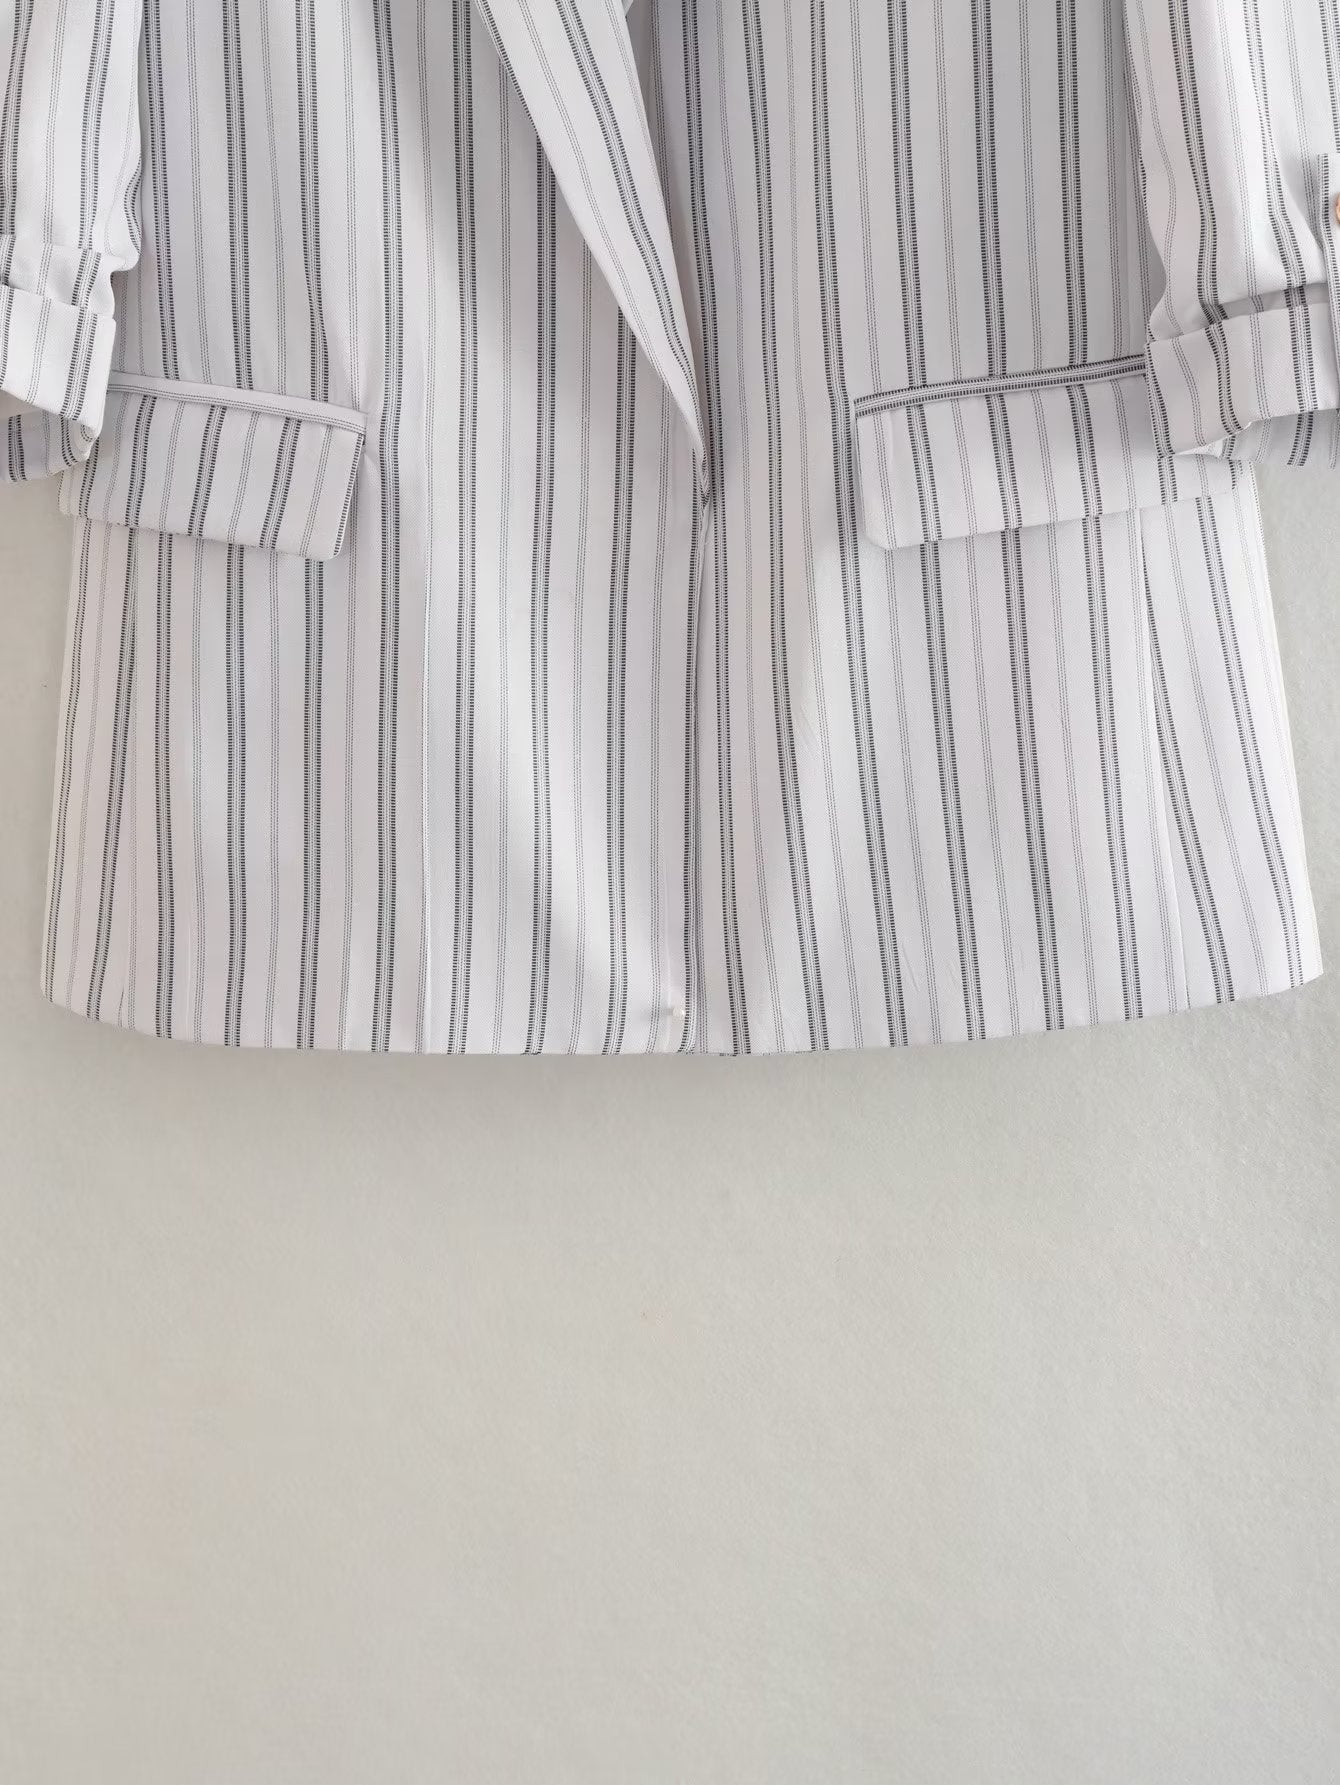 Capsule Wardrobe 2023 | Contemporary Striped White Summer Blazer